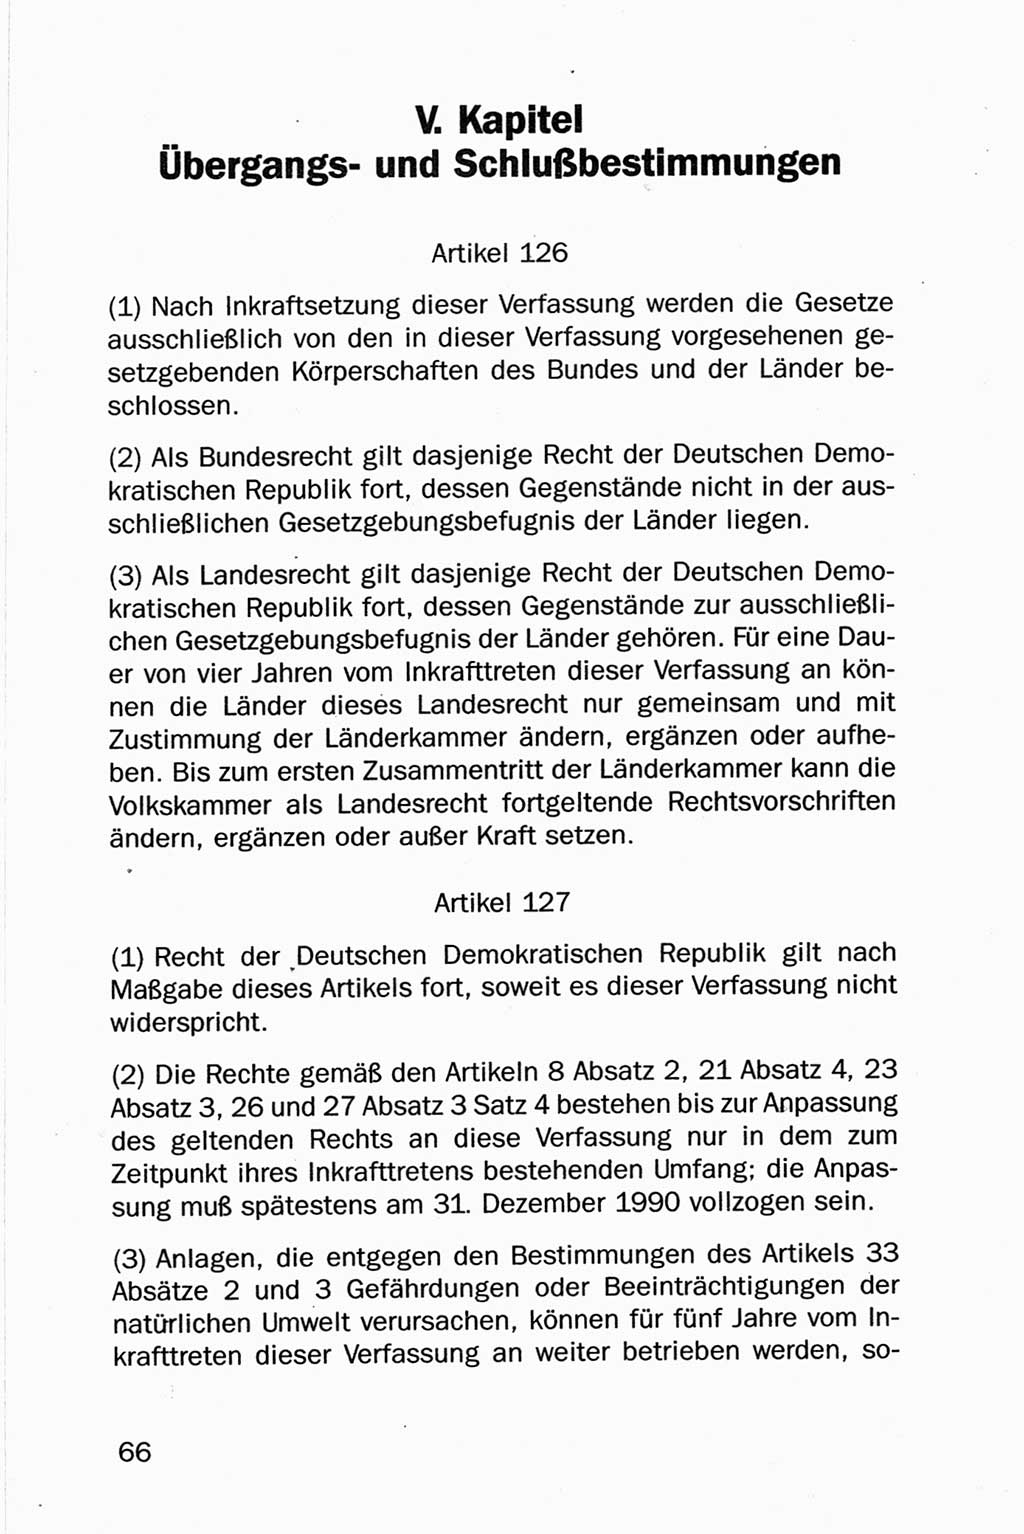 Entwurf Verfassung der Deutschen Demokratischen Republik (DDR), Arbeitsgruppe "Neue Verfassung der DDR" des Runden Tisches, Berlin 1990, Seite 66 (Entw. Verf. DDR 1990, S. 66)